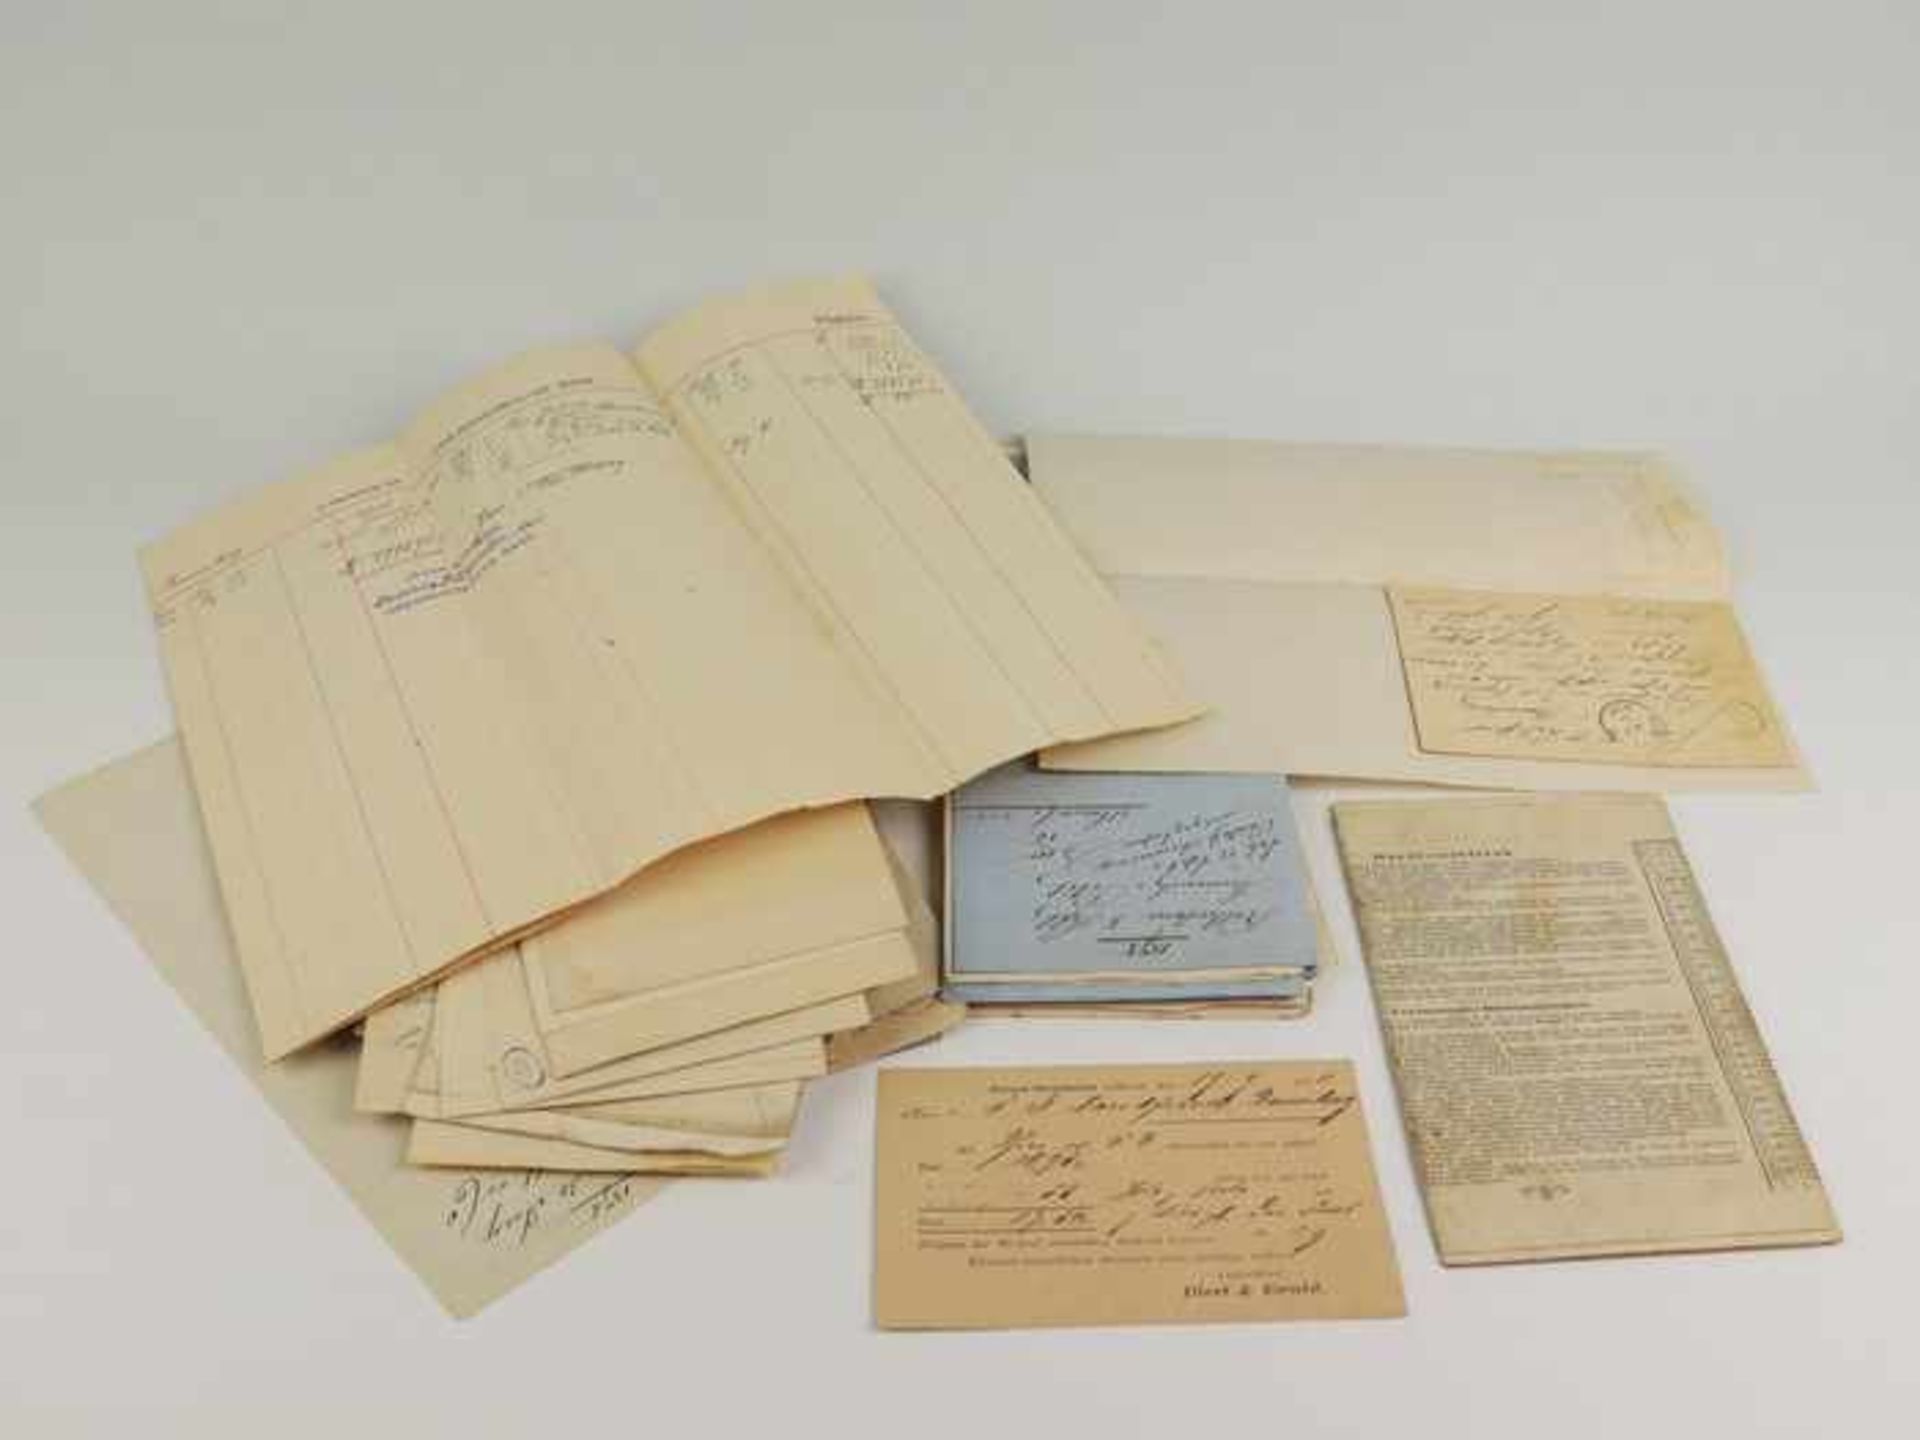 Briefe u.a. - Konvolut19. Jh., ca. 80 St., München, Antwerpen, Amsterdam, Rotterdam, Bremen,